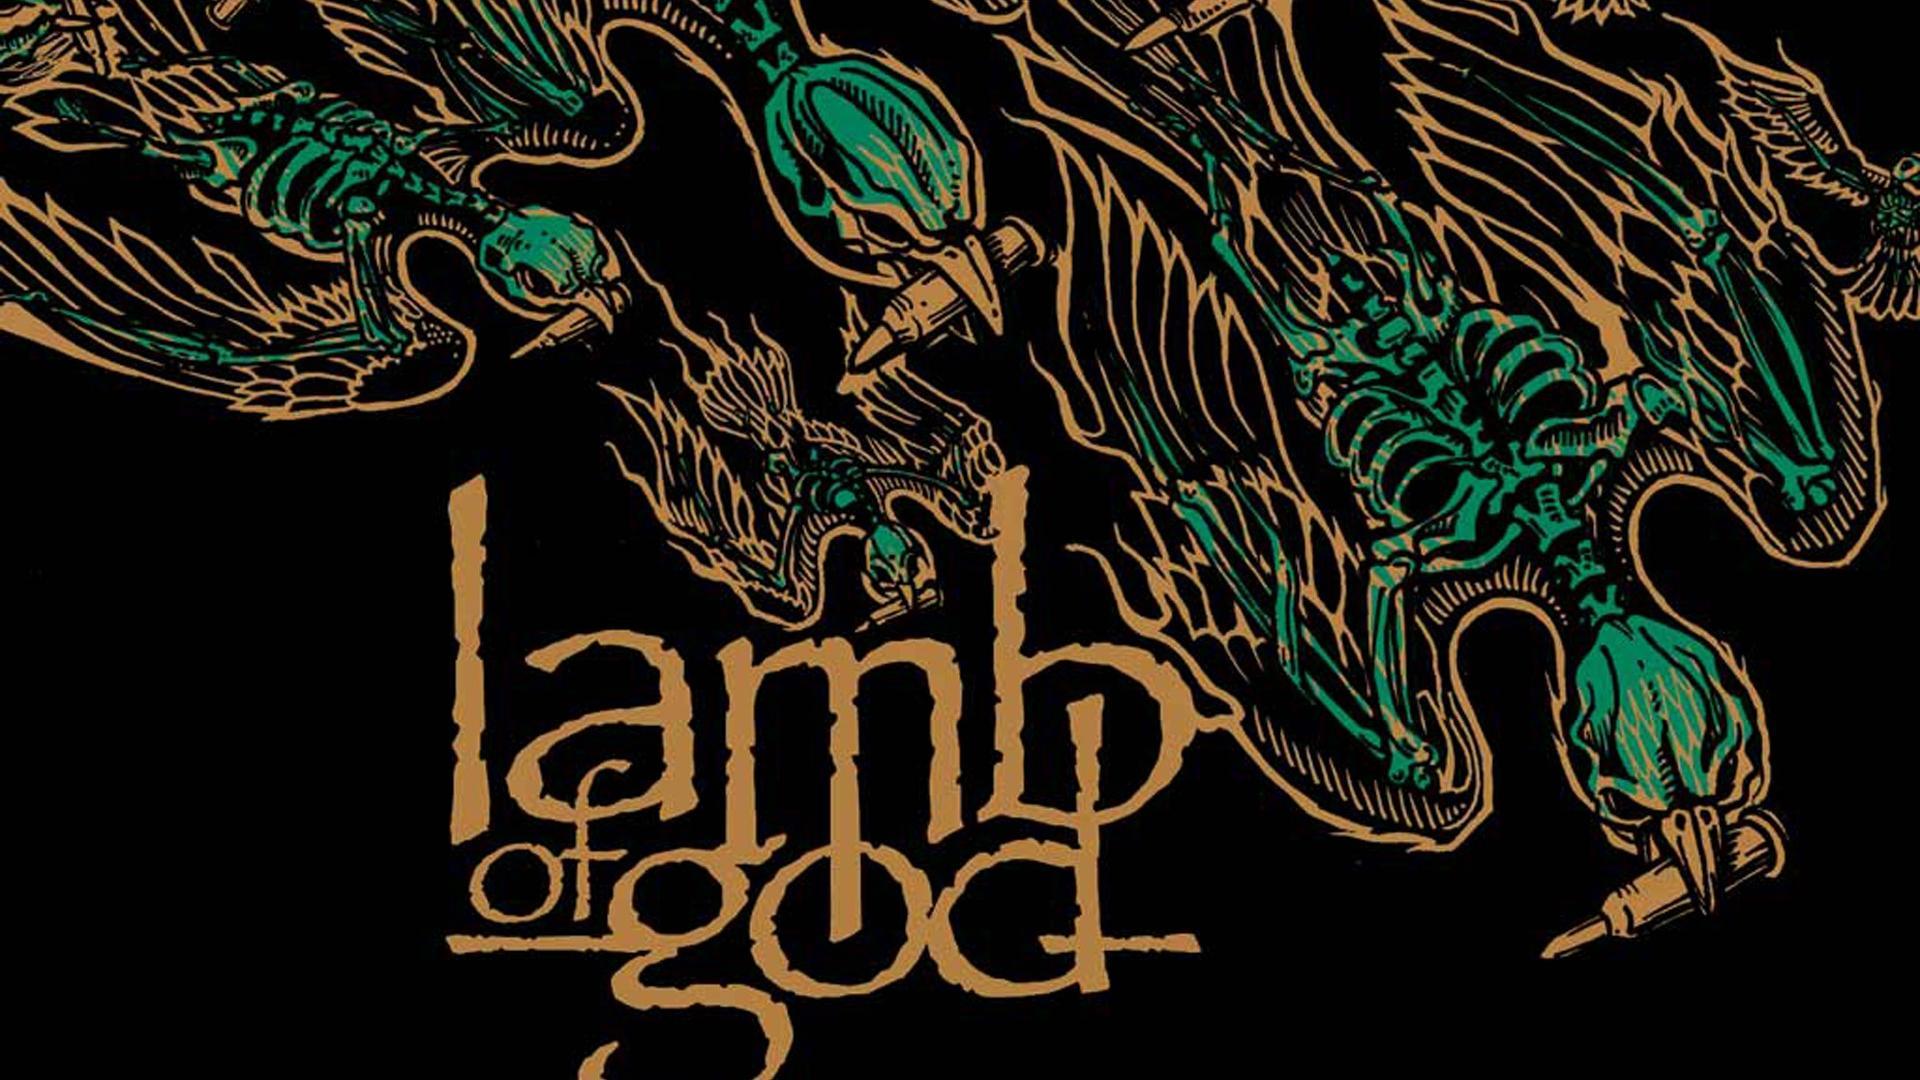 lamb of god resolution wallpaper